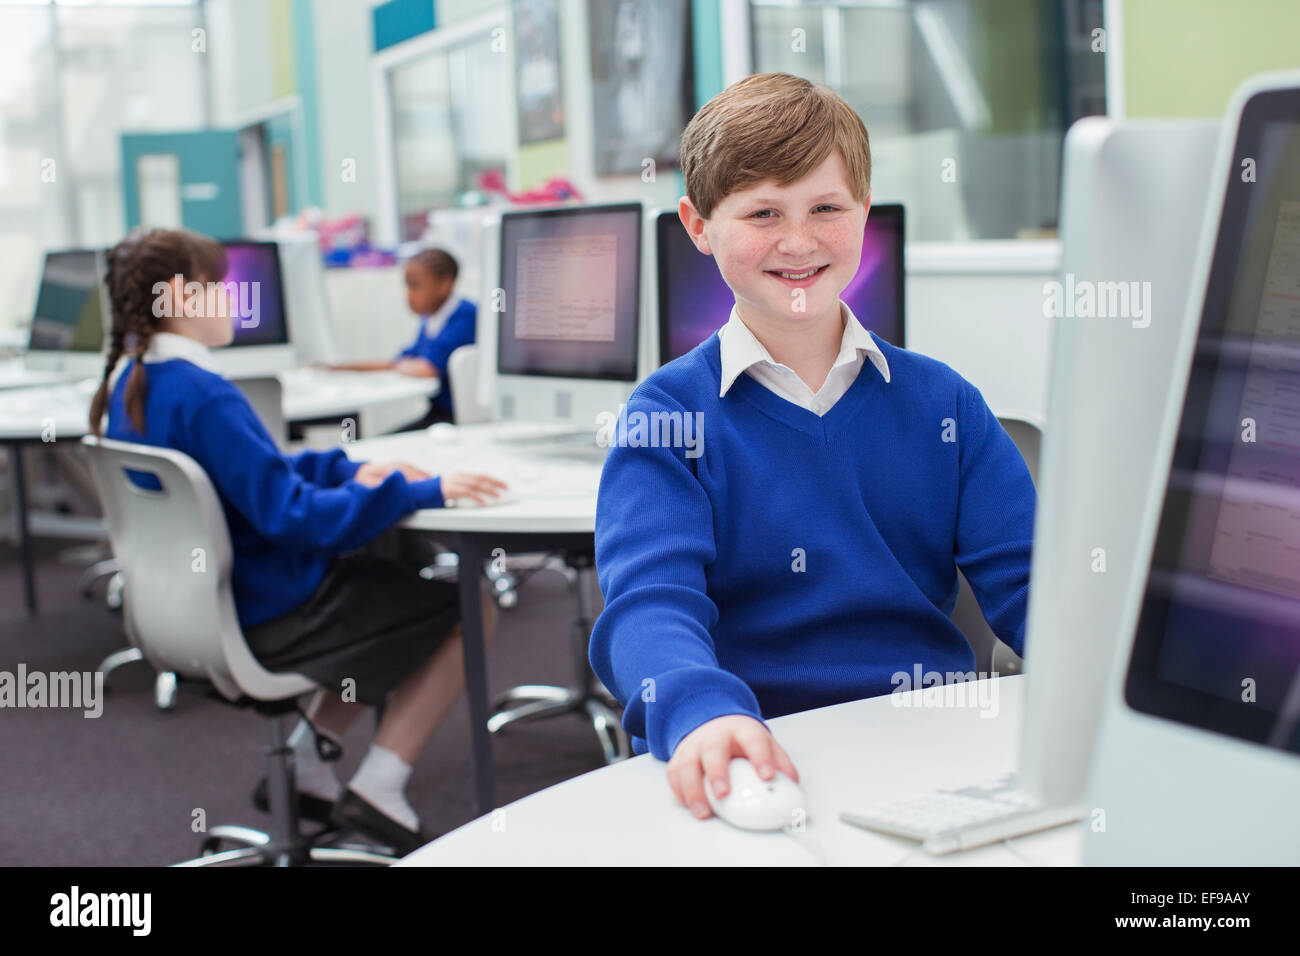 Les enfants de l'école primaire travaillant avec les ordinateurs Banque D'Images